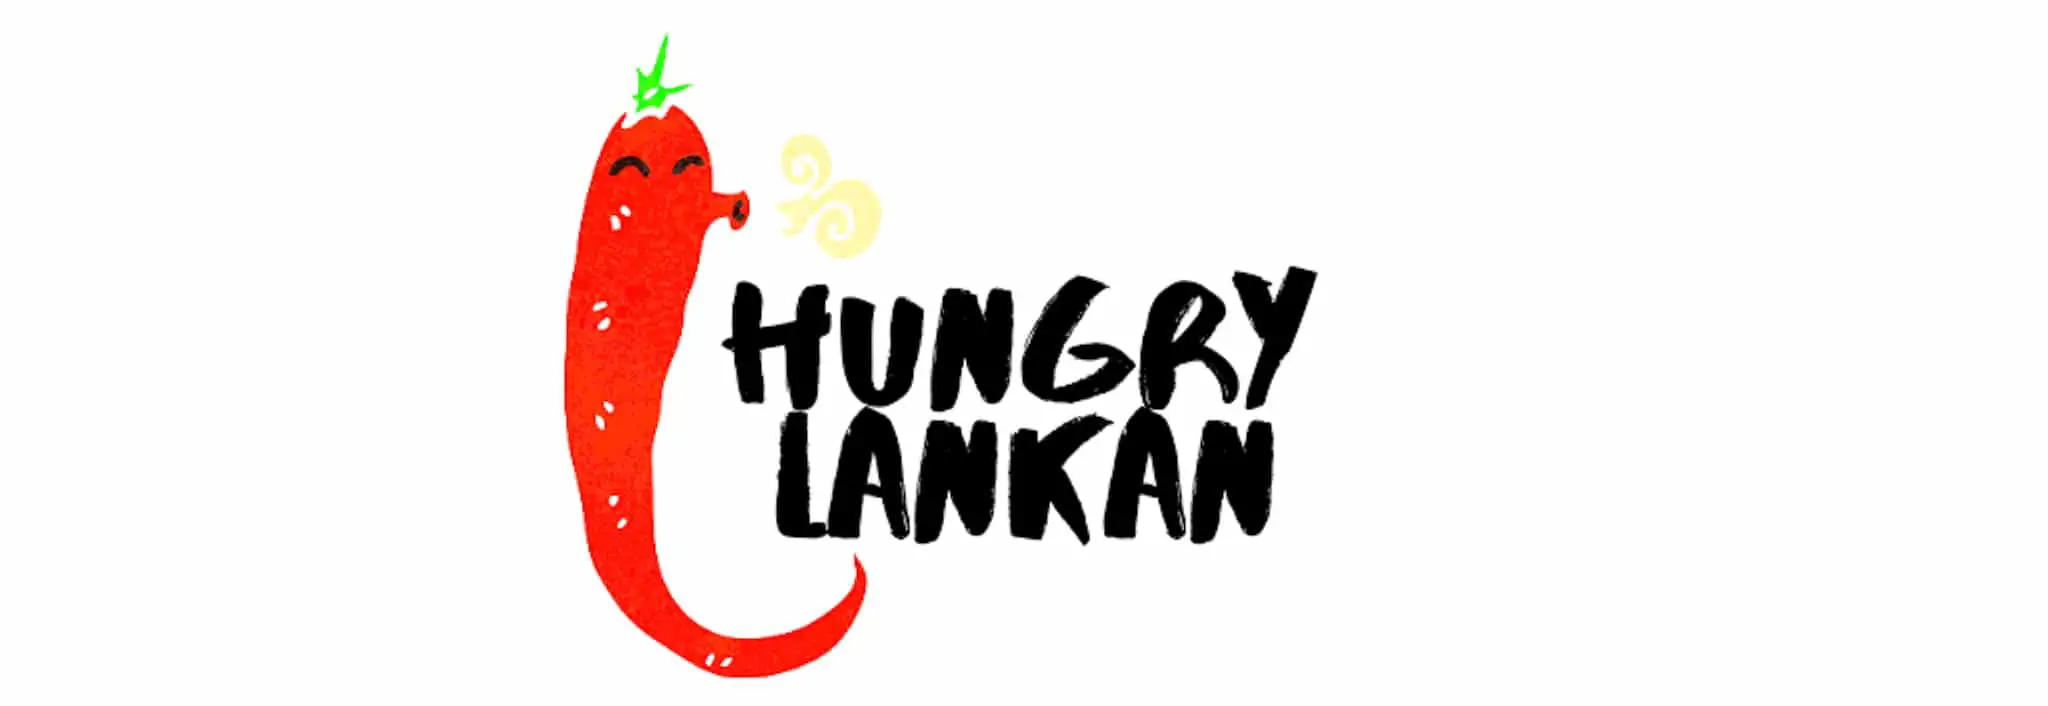 Hungry Lankan